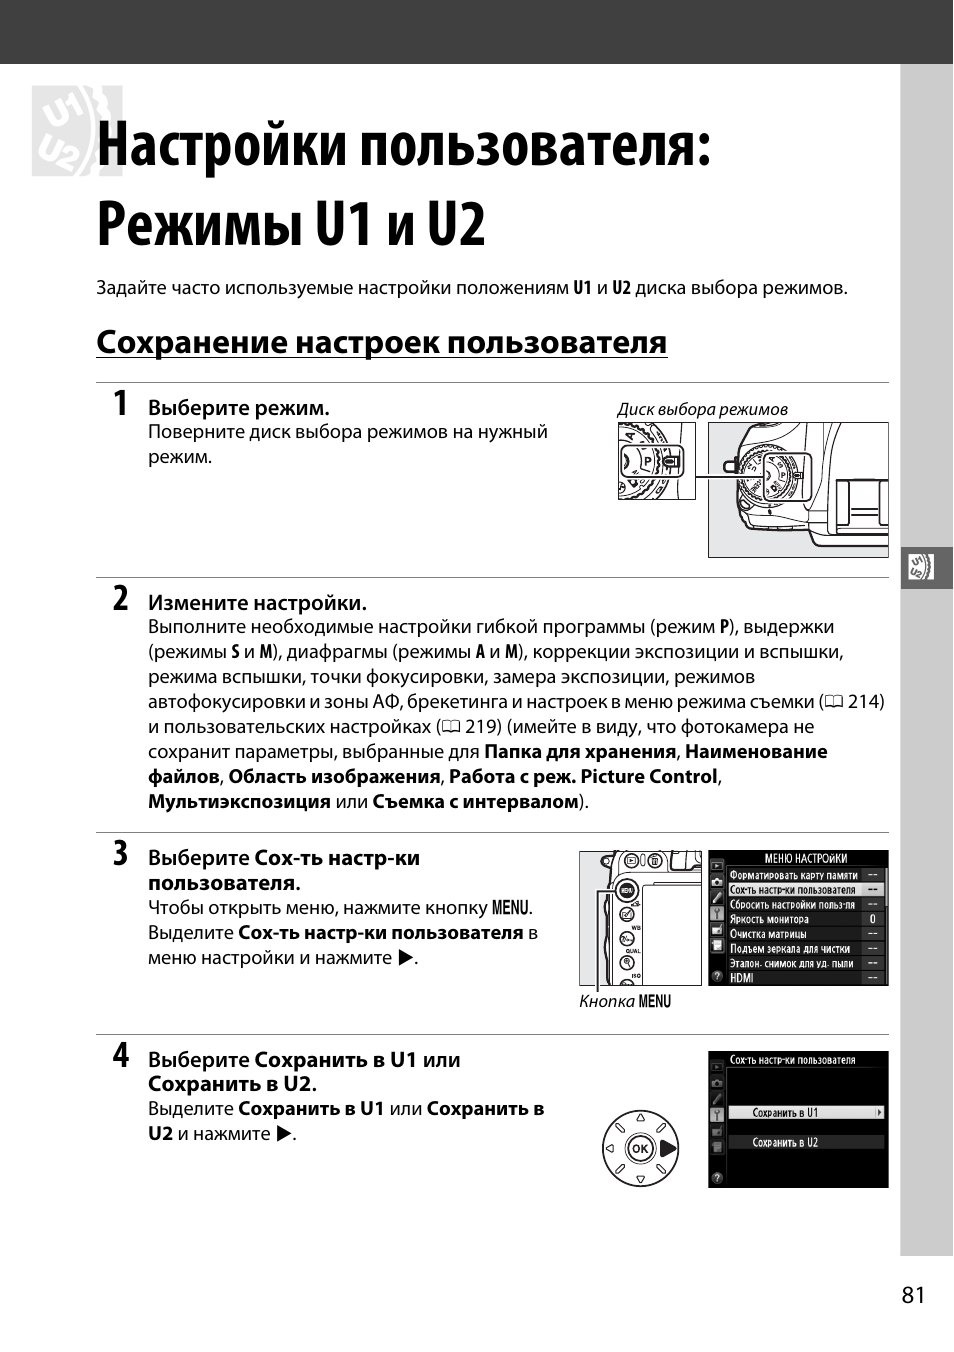 Настройки пользователя: режимы u1 и u2, Сохранение настроек пользователя, И u2 | Инструкция по эксплуатации Nikon D600 | Страница 107 / 368